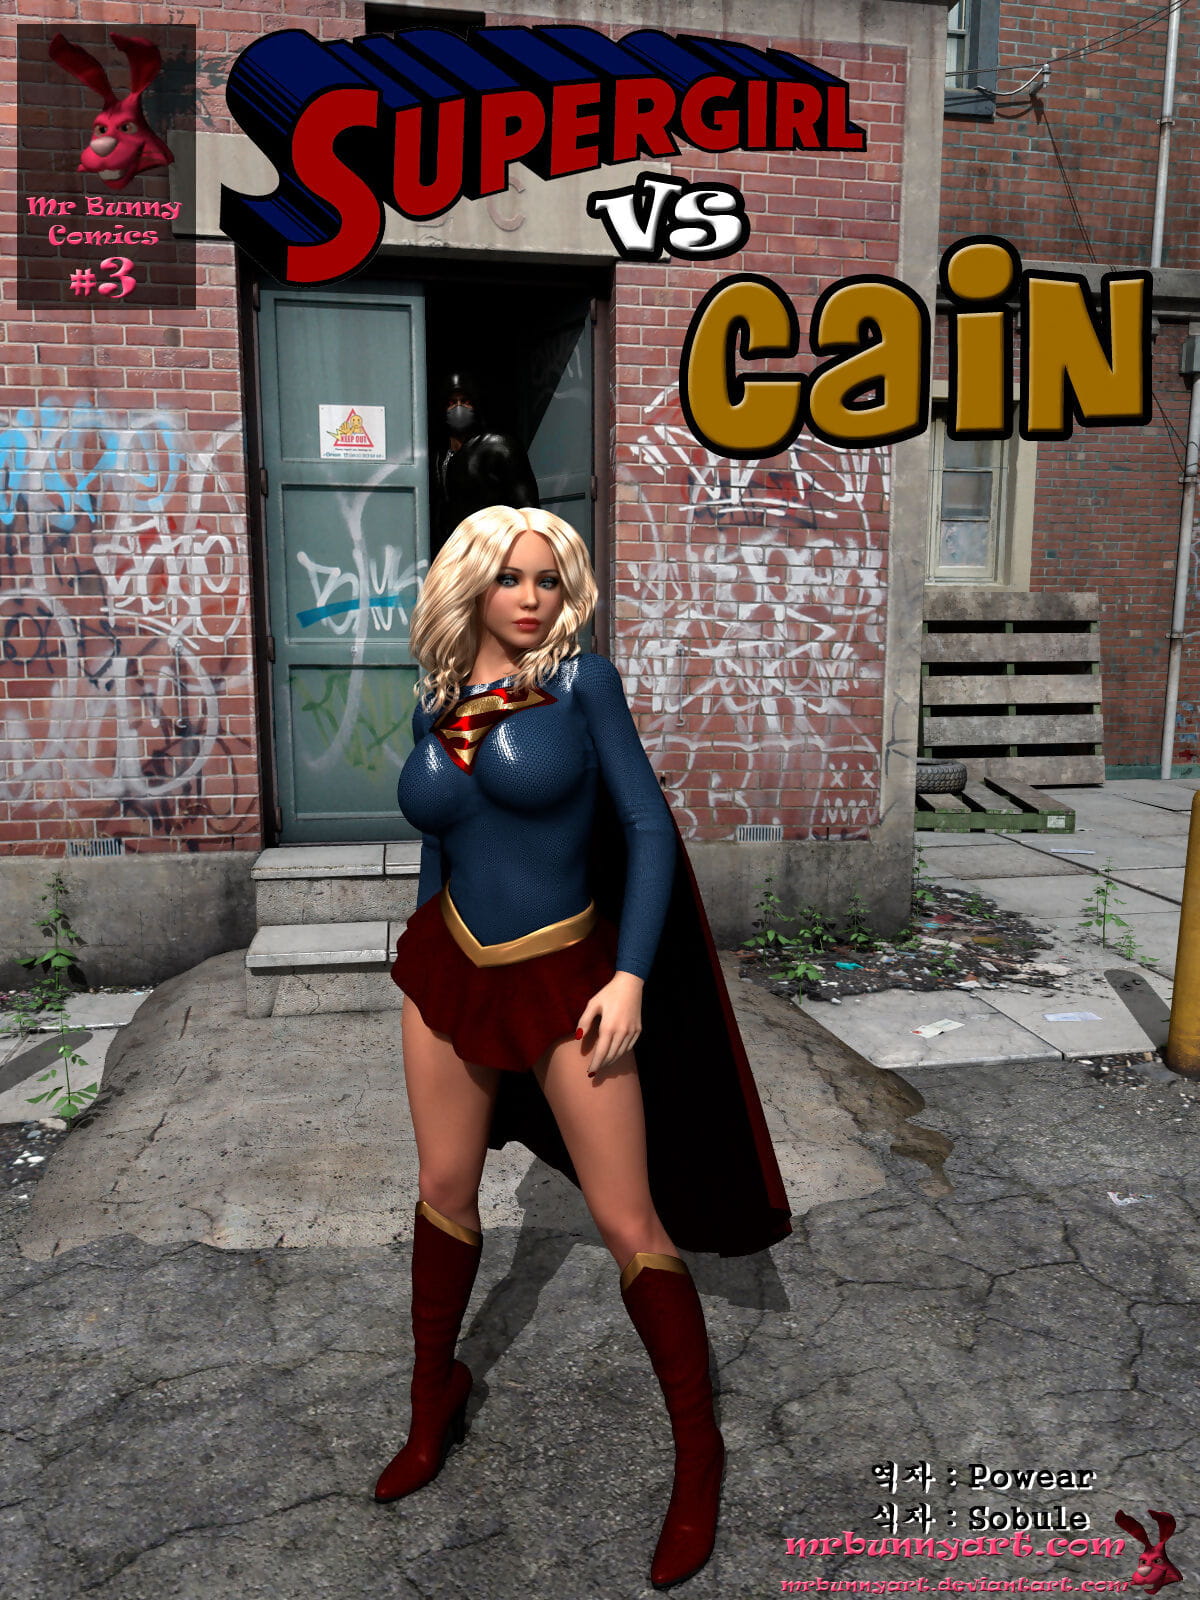 3d Superheroine Sex Comics - Supergirl Vs Cain at 3d Comix Sex